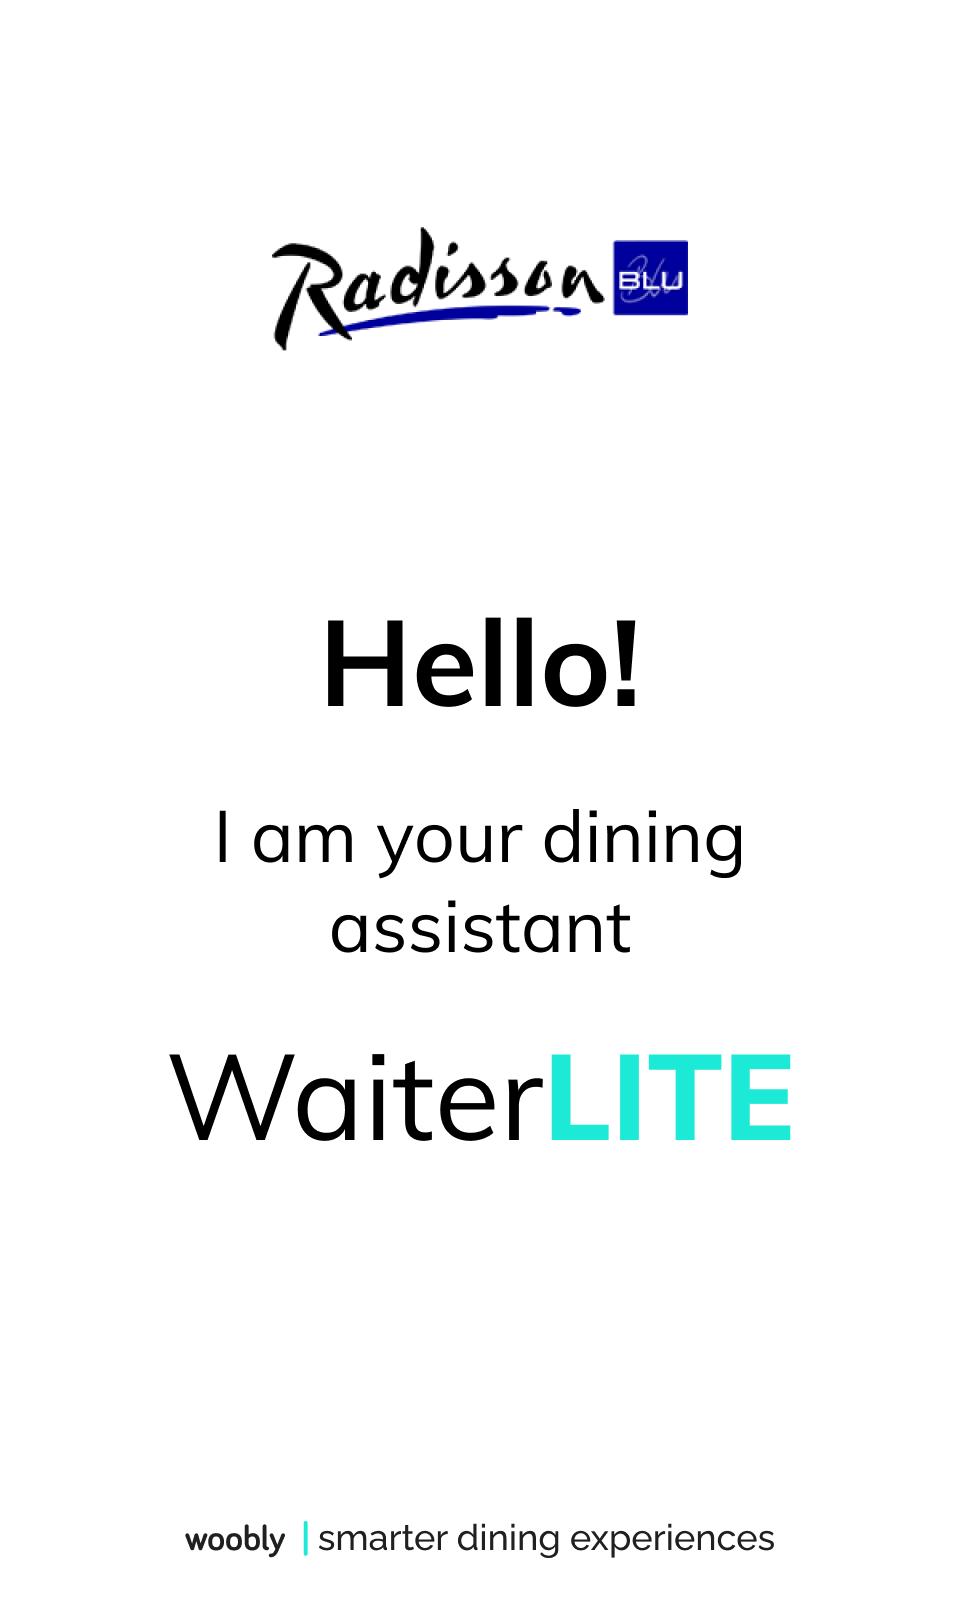 UI Design | WaiterLITE